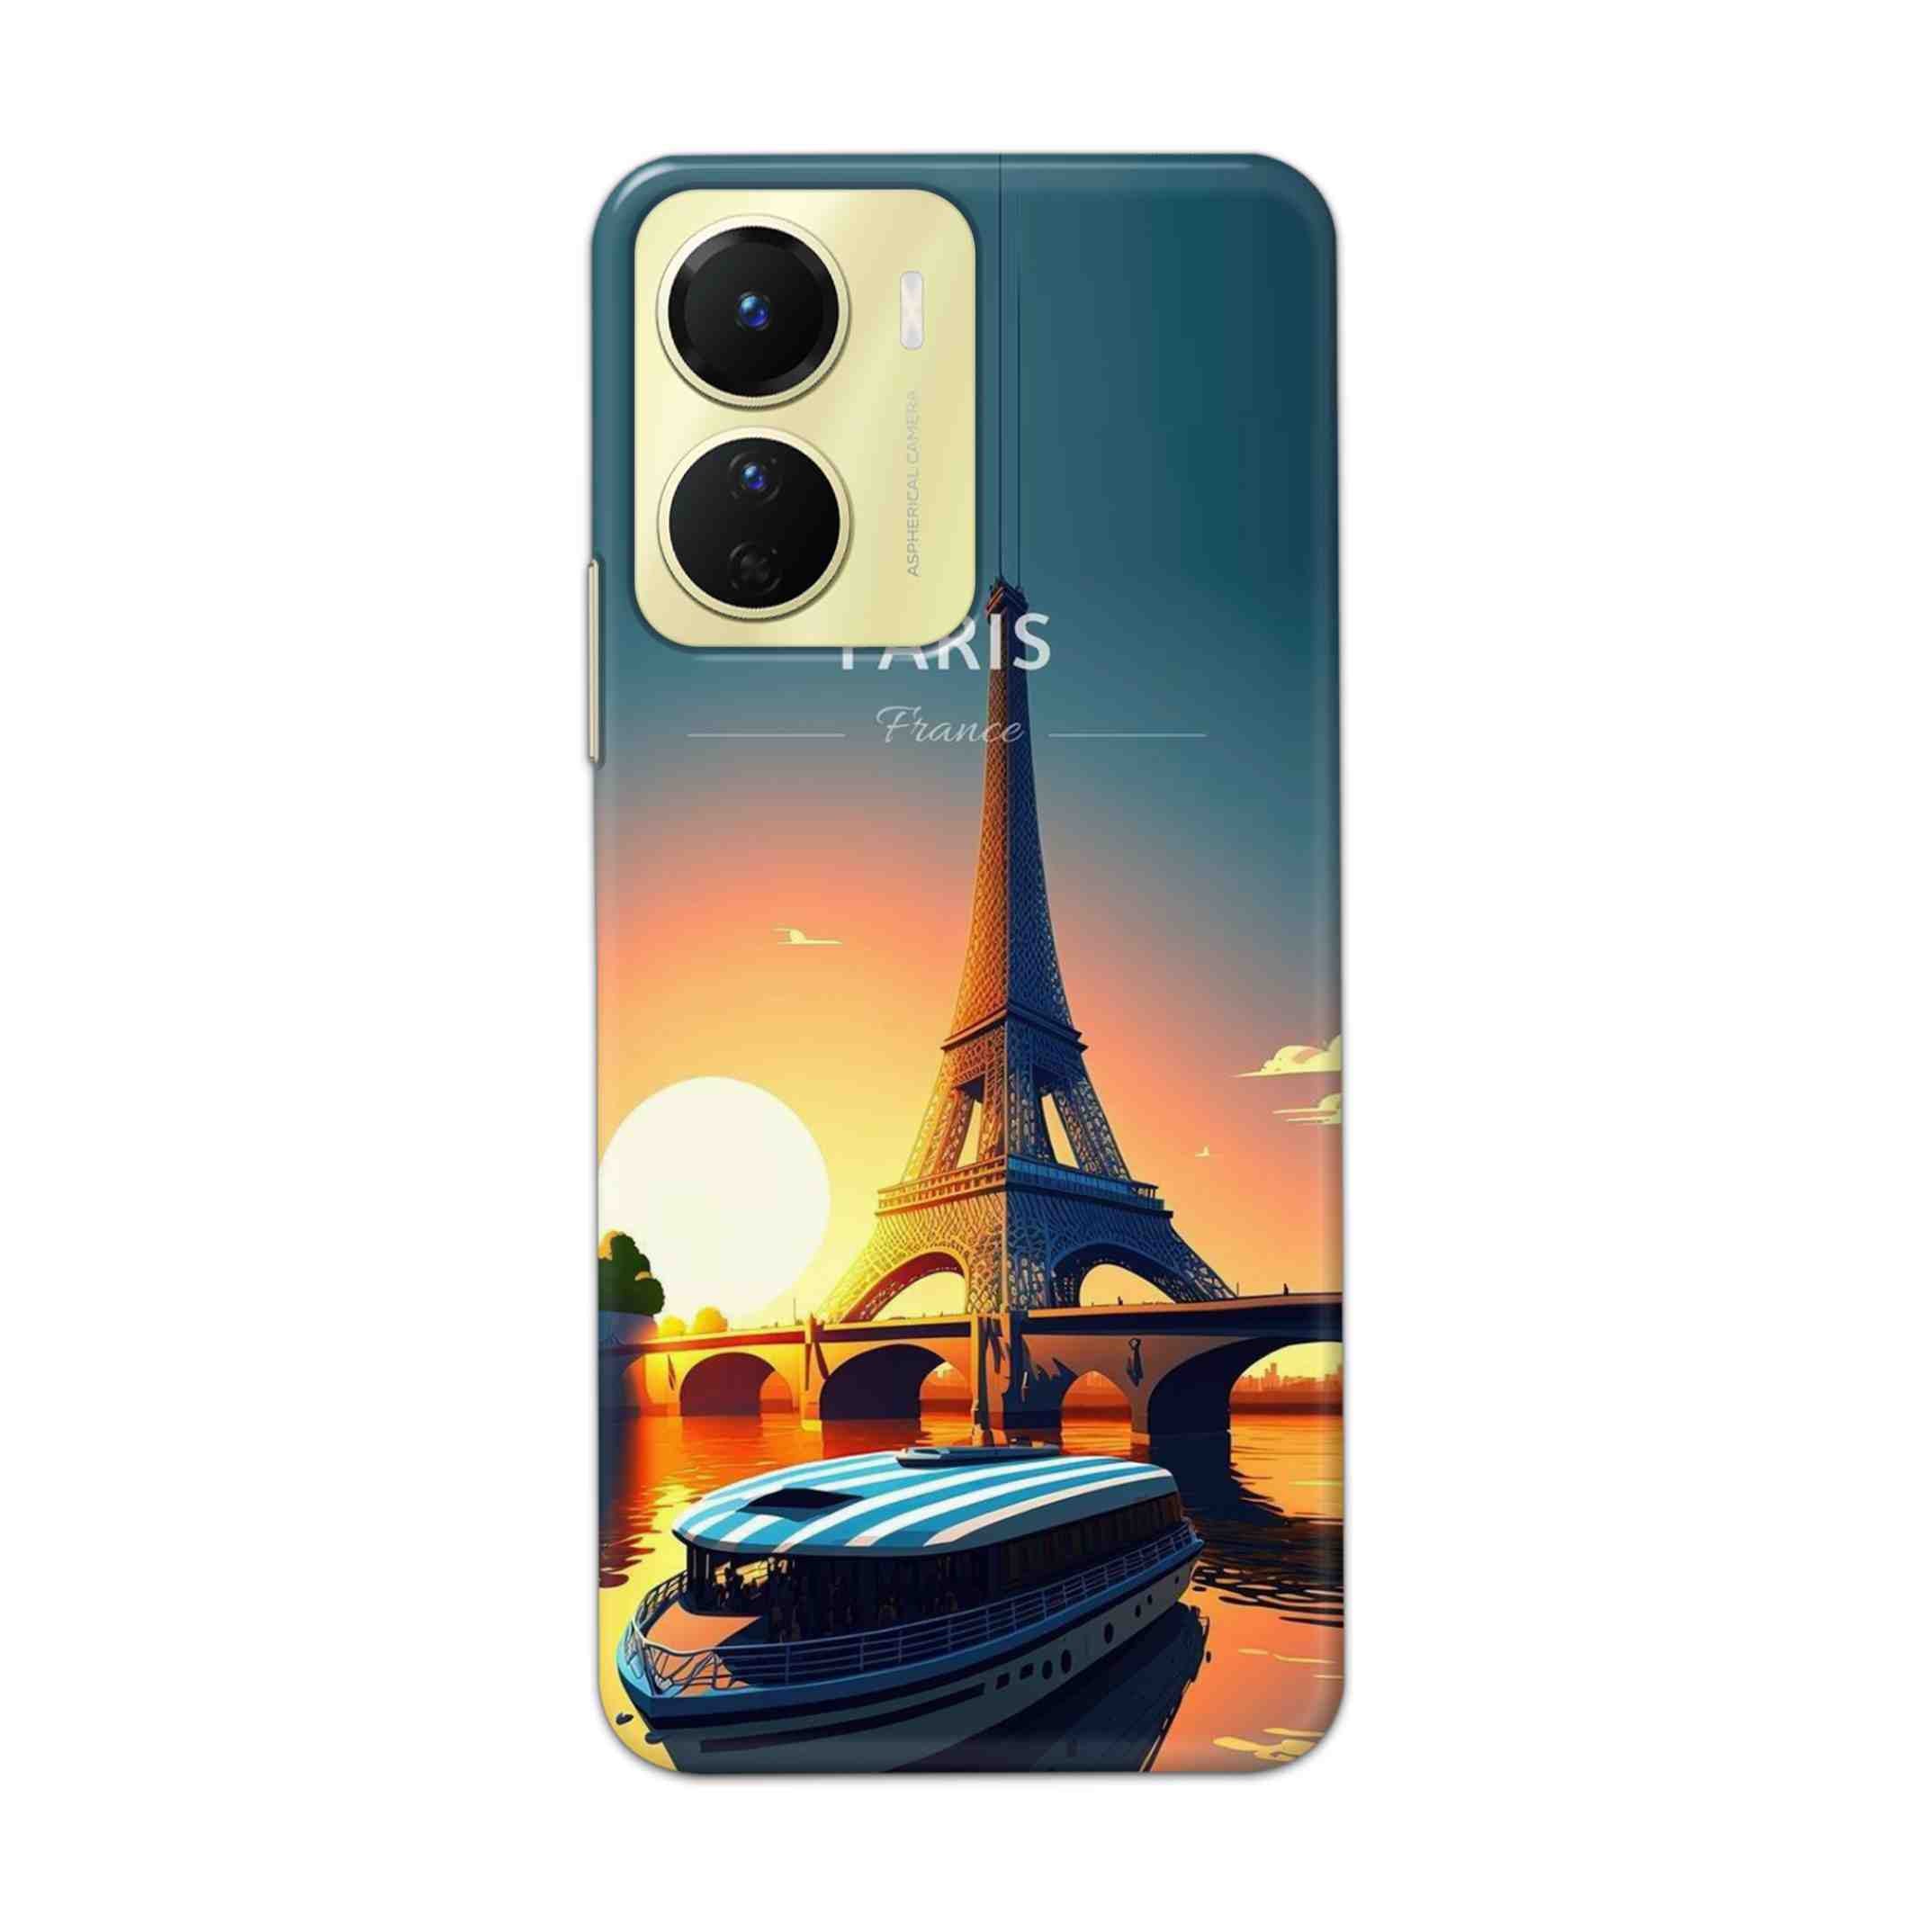 Buy France Hard Back Mobile Phone Case Cover For Vivo Y16 Online